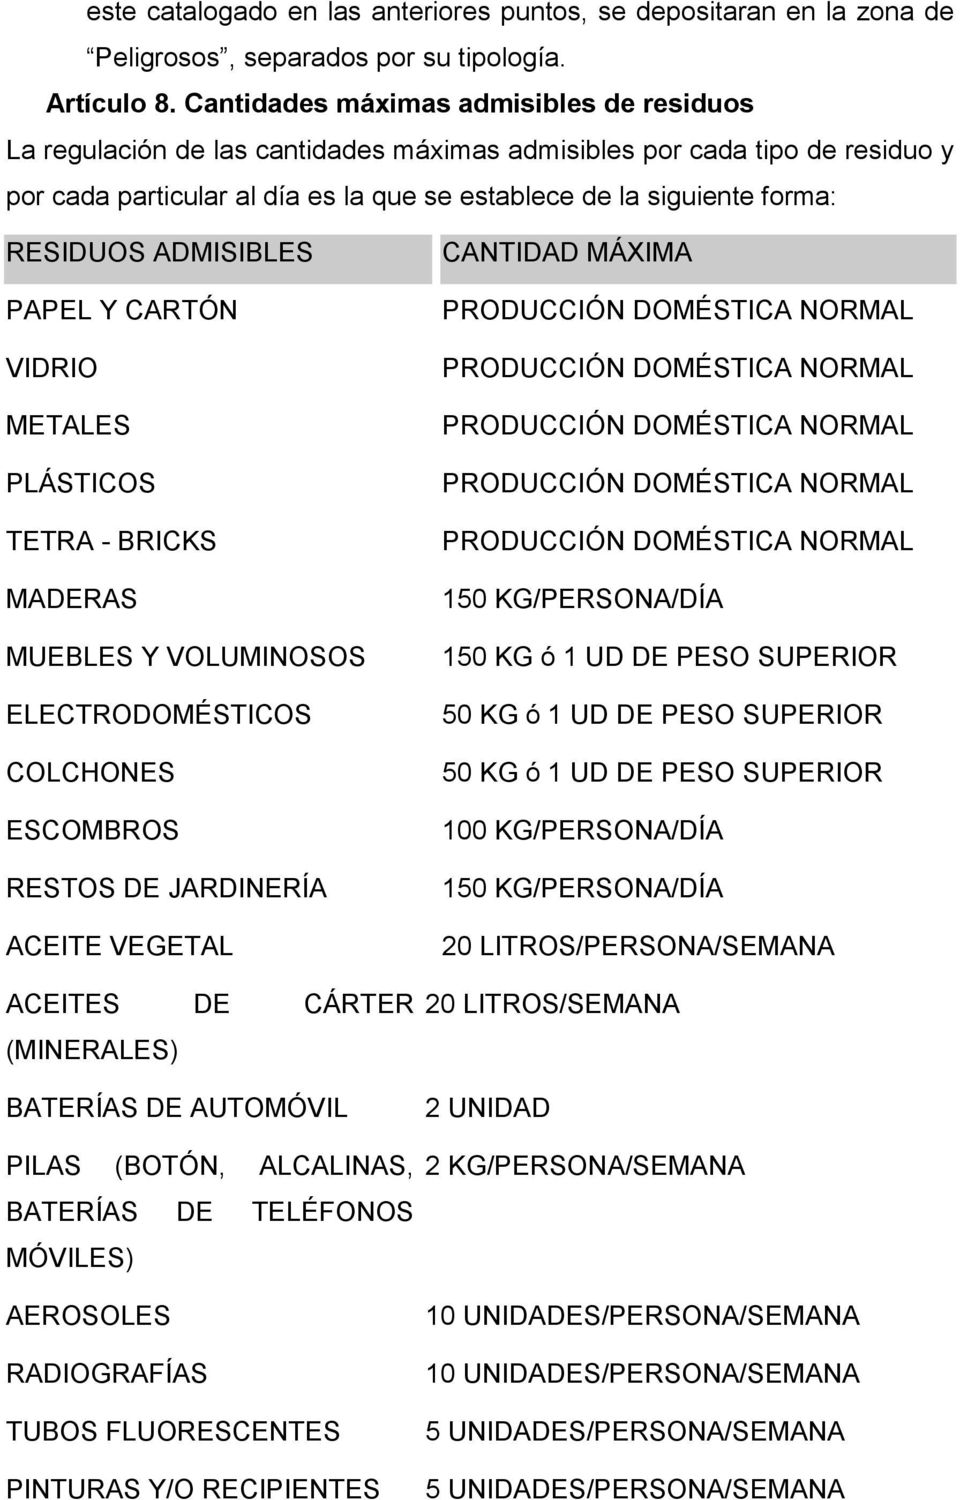 RESIDUOS ADMISIBLES PAPEL Y CARTÓN VIDRIO METALES PLÁSTICOS TETRA - BRICKS MADERAS MUEBLES Y VOLUMINOSOS ELECTRODOMÉSTICOS COLCHONES ESCOMBROS RESTOS DE JARDINERÍA ACEITE VEGETAL ACEITES DE CÁRTER